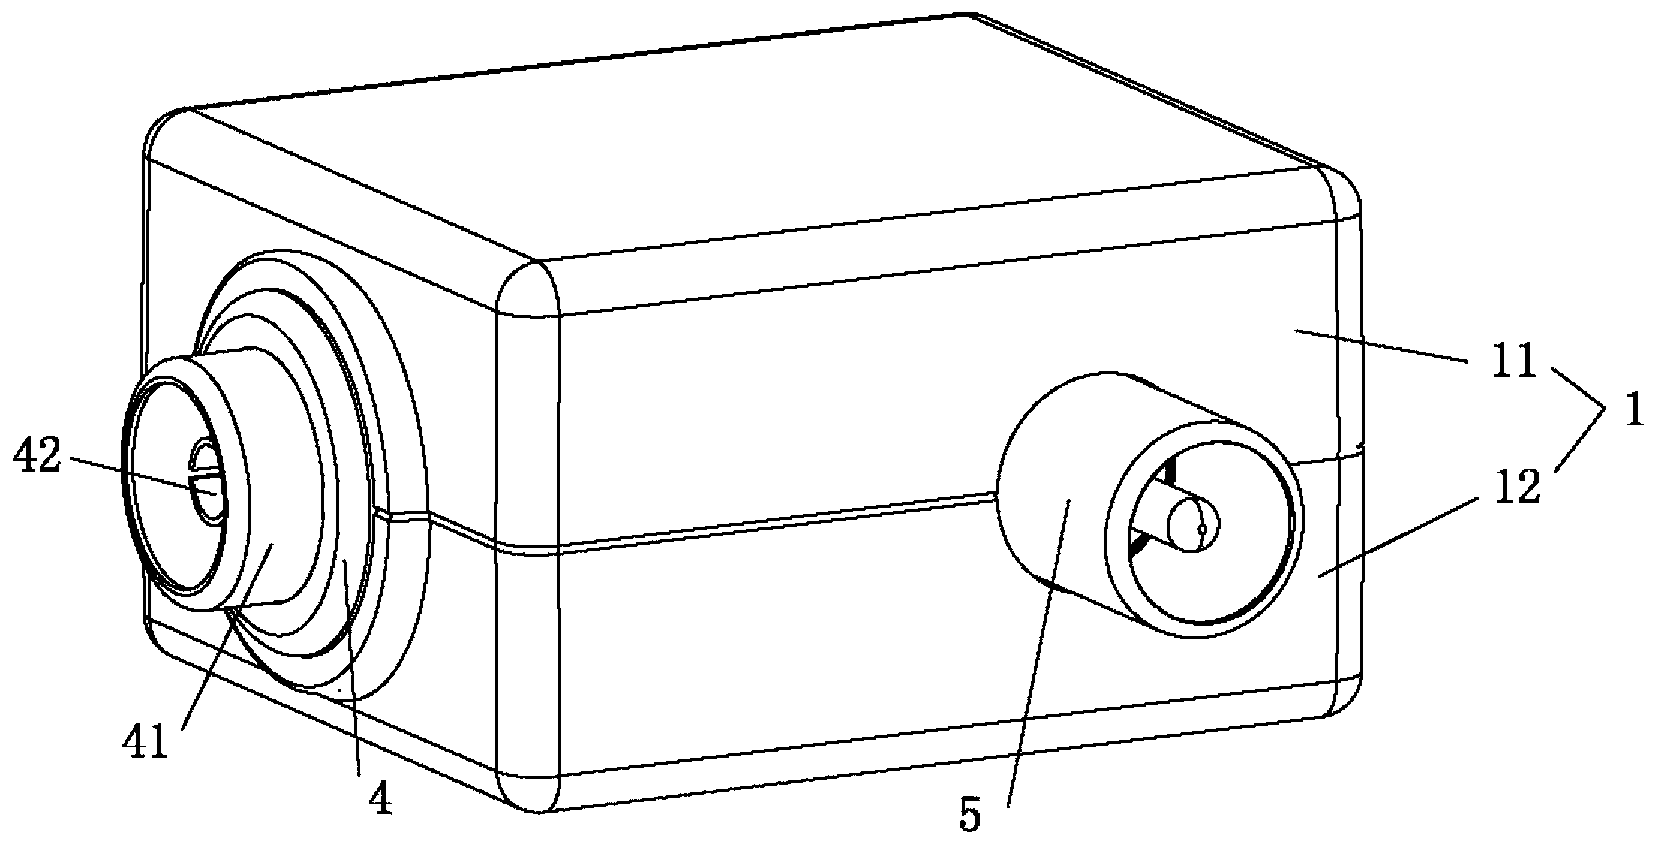 Antenna isolator